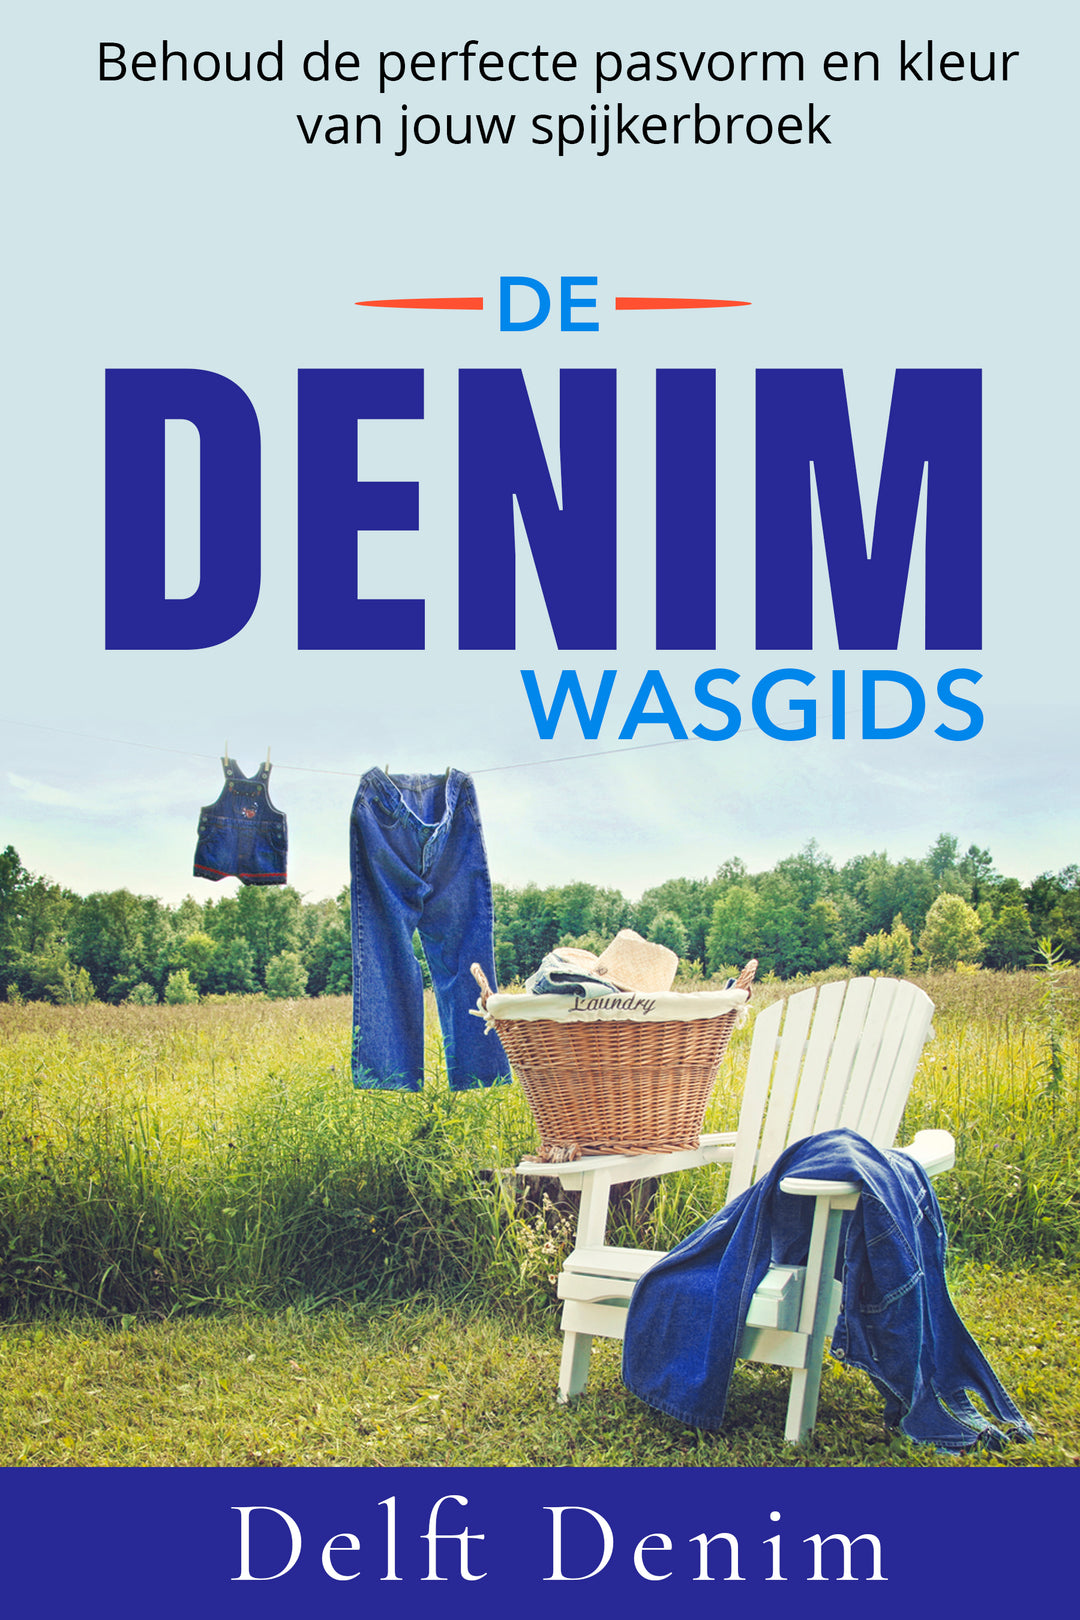 Wasgids voor denim jeans met een rustieke wasmand en jeans die buiten aan de lijn drogen in een zonnig veld, met de slogan 'Behoud de perfecte pasvorm en kleur van jouw spijkerbroek' - Delft Denim.